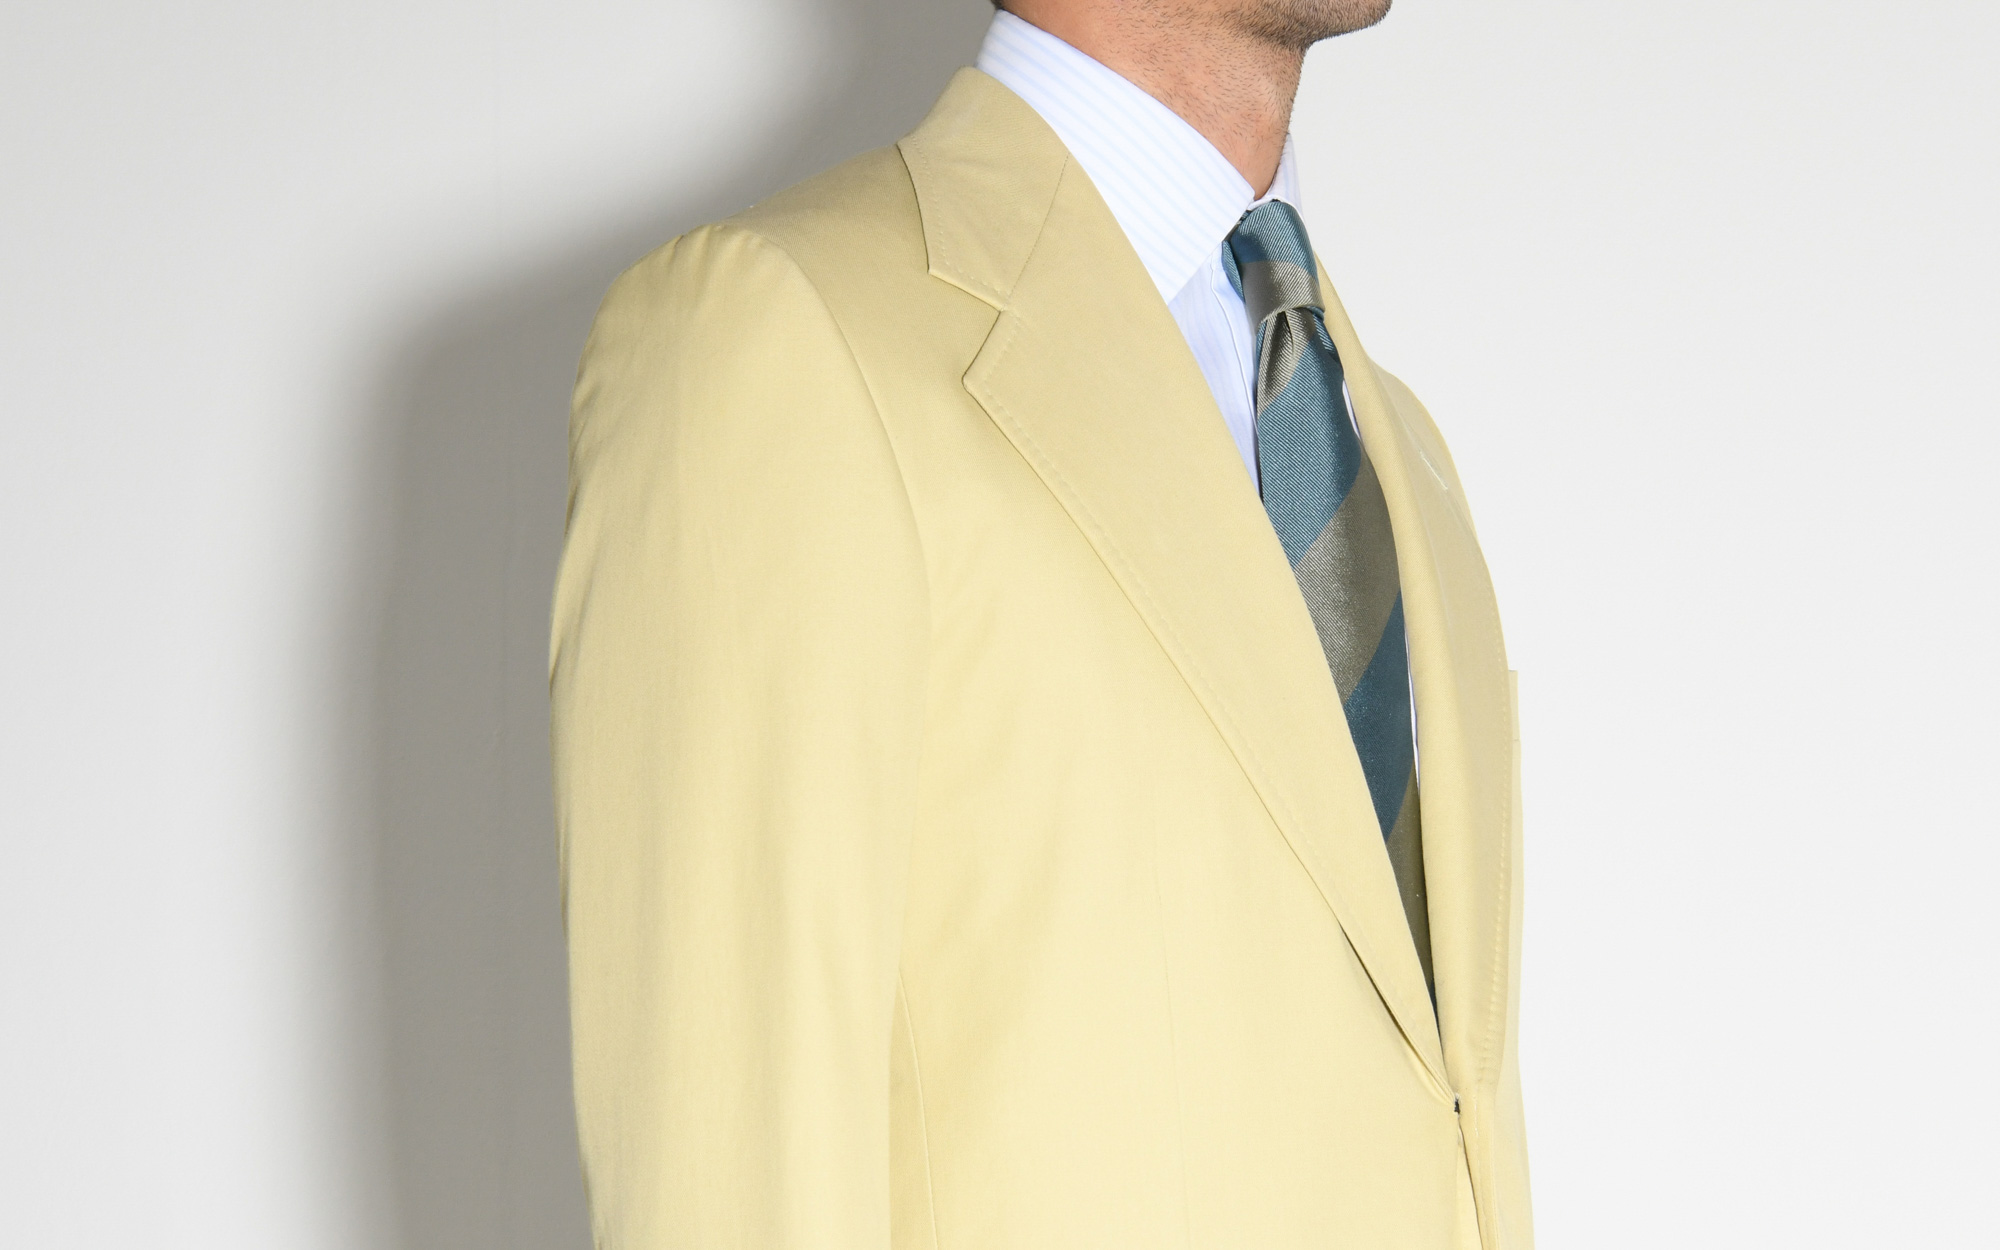 Sutton Wool Gabardine Suit Jacket in Aqua - 36R / AQUA / SP018522-BL04 |  Fashion suits for men, Suit jacket, Suits